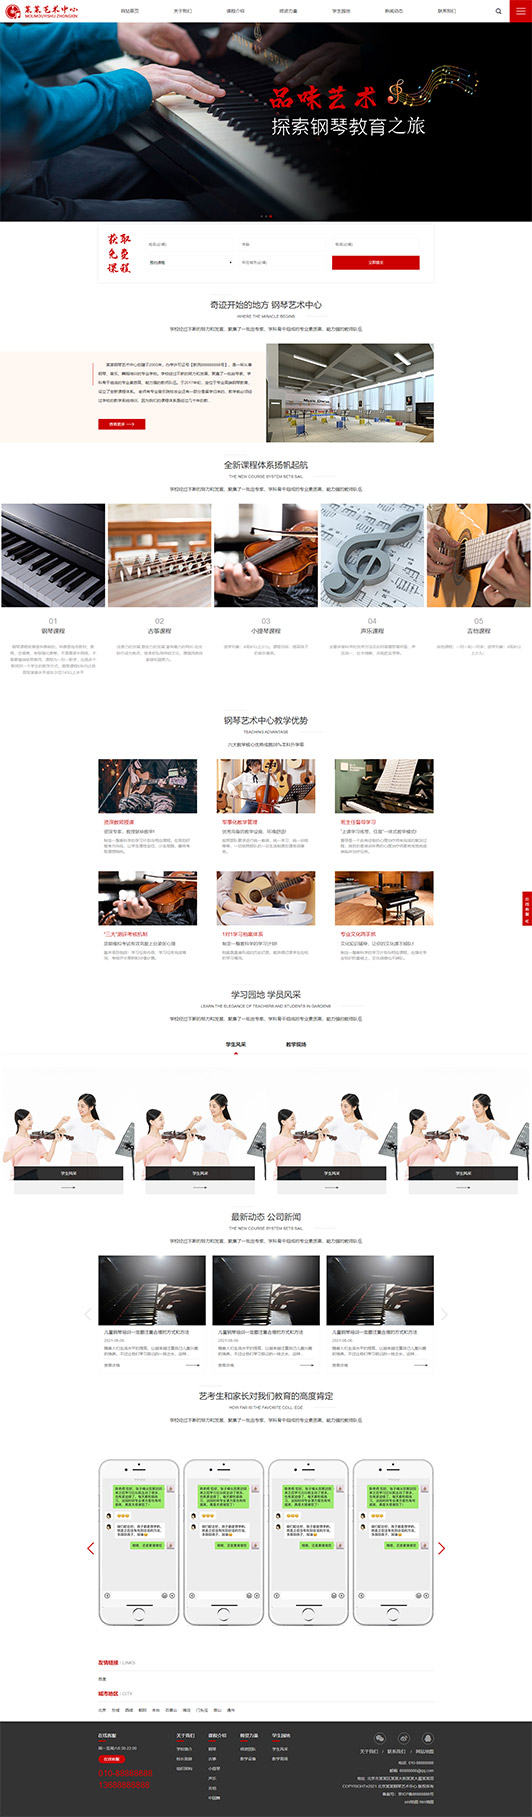 陵水钢琴艺术培训公司响应式企业网站